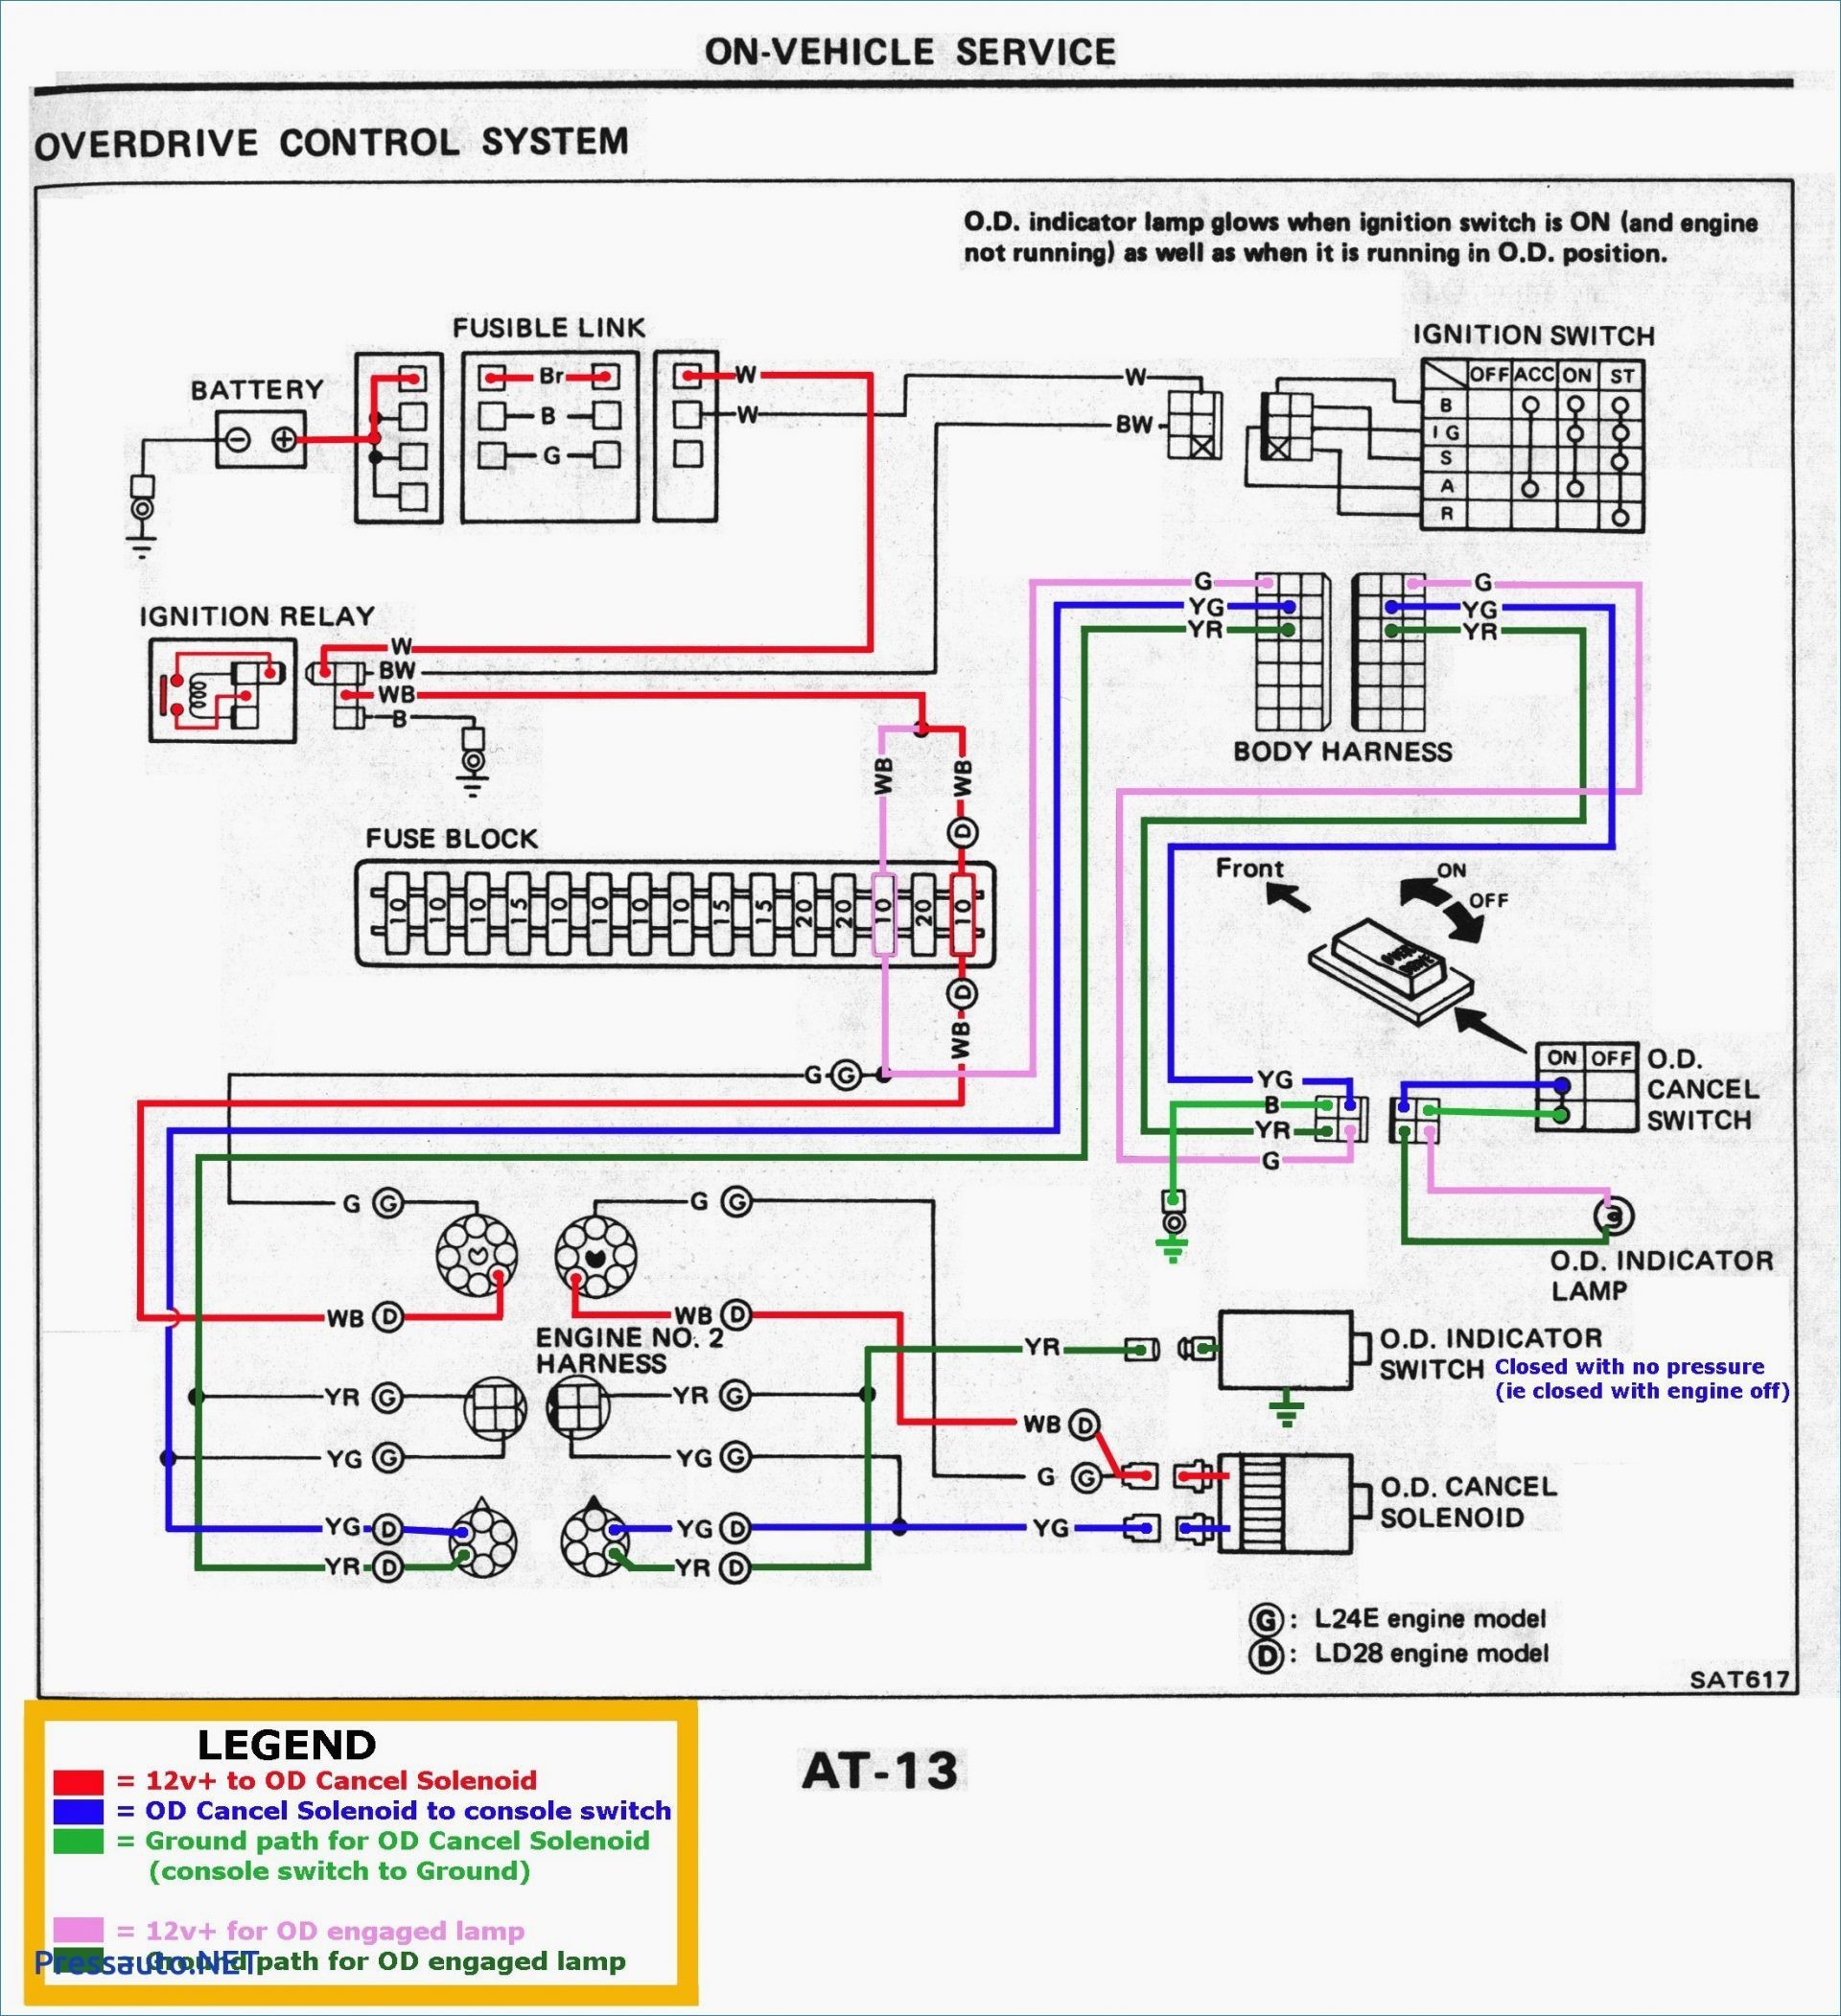 Toyota Power Window Switch Wiring Diagram Briggs Wiring Diagram 12 Up Another Blog About Wiring Diagram • Of Toyota Power Window Switch Wiring Diagram